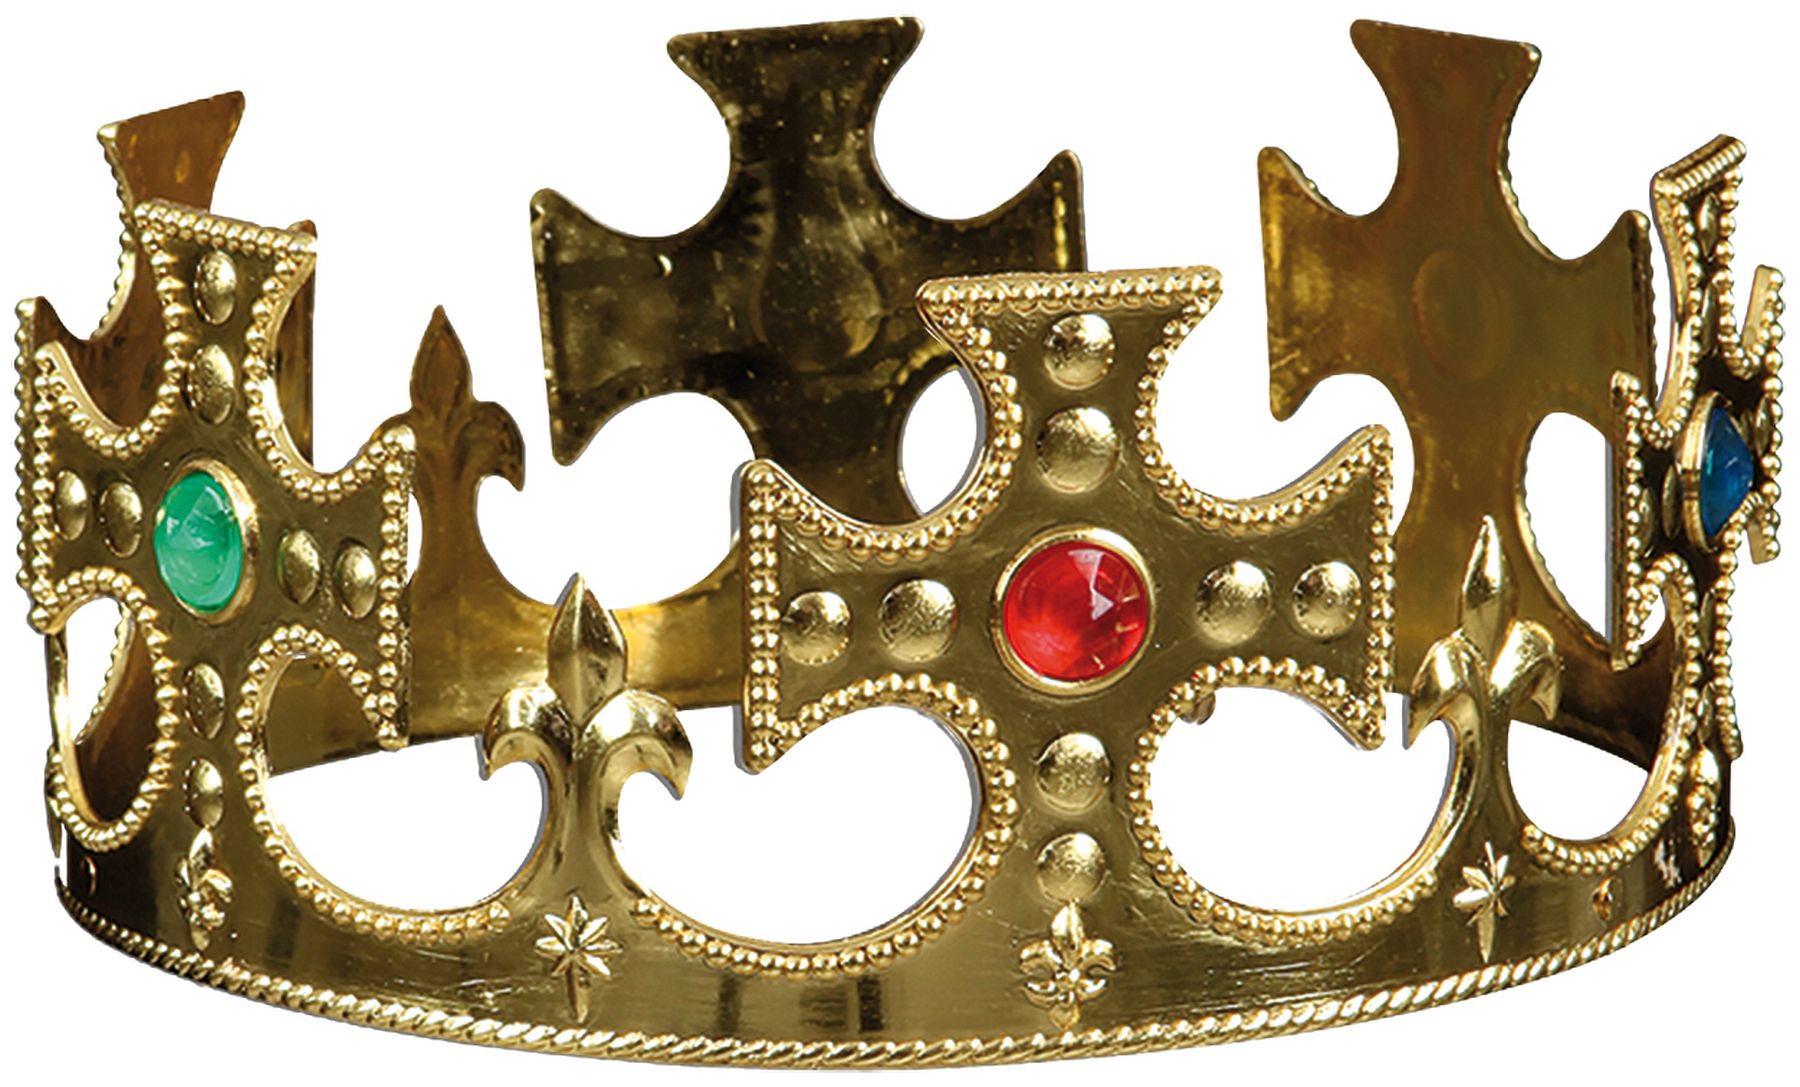 Royal crown, gold